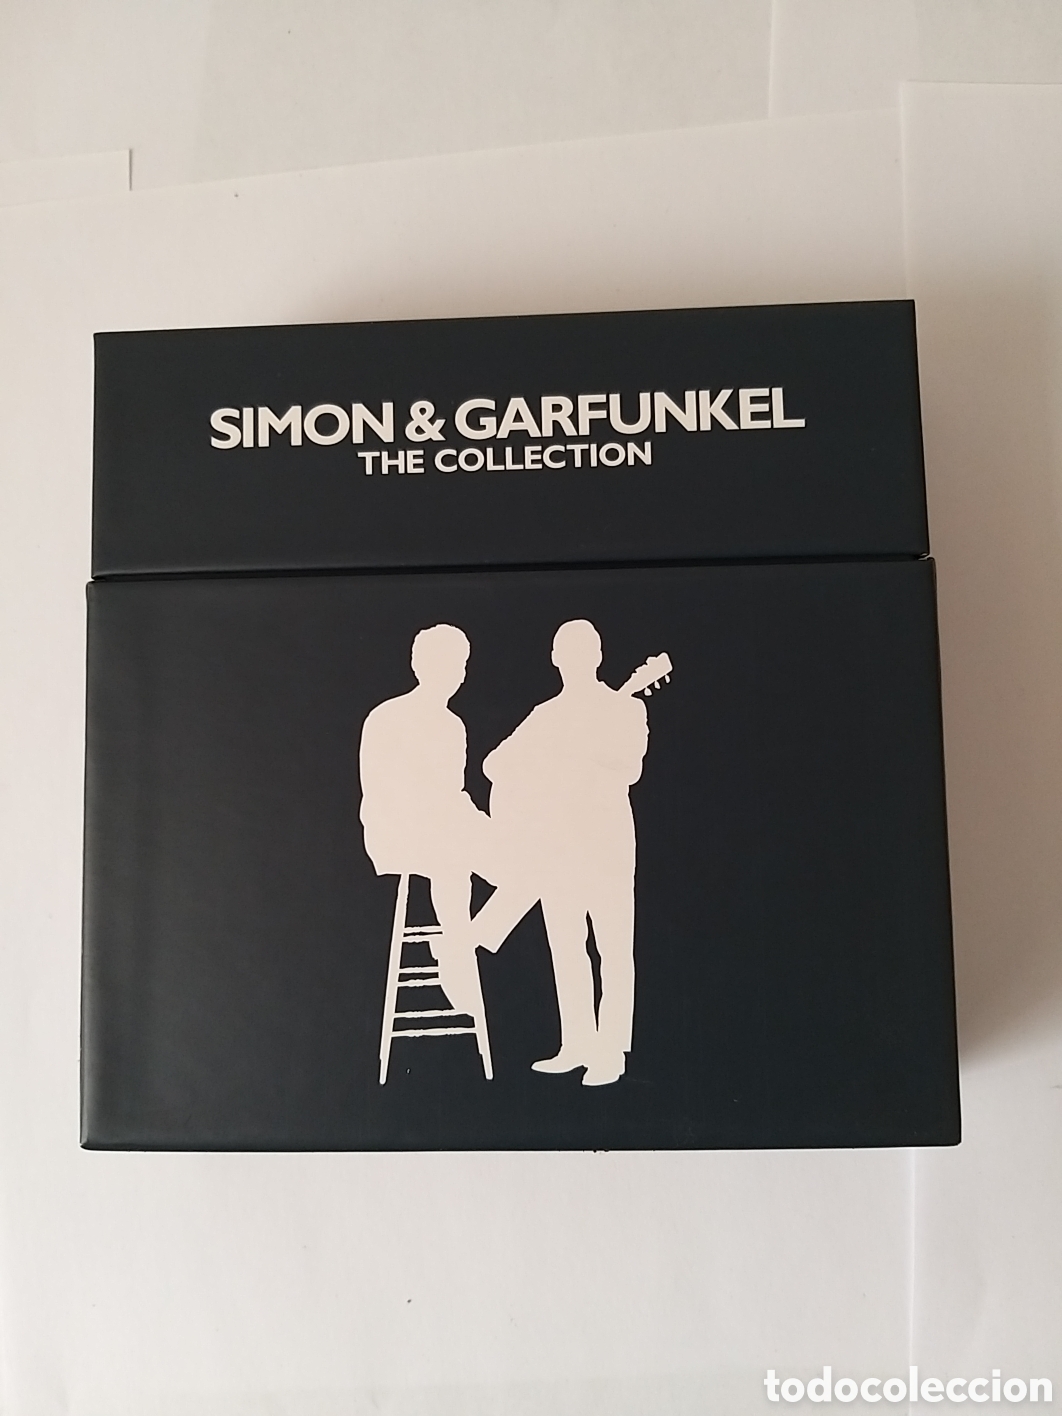 サイモン&ガーファンクル The collection(6CD BOXSET) - CD